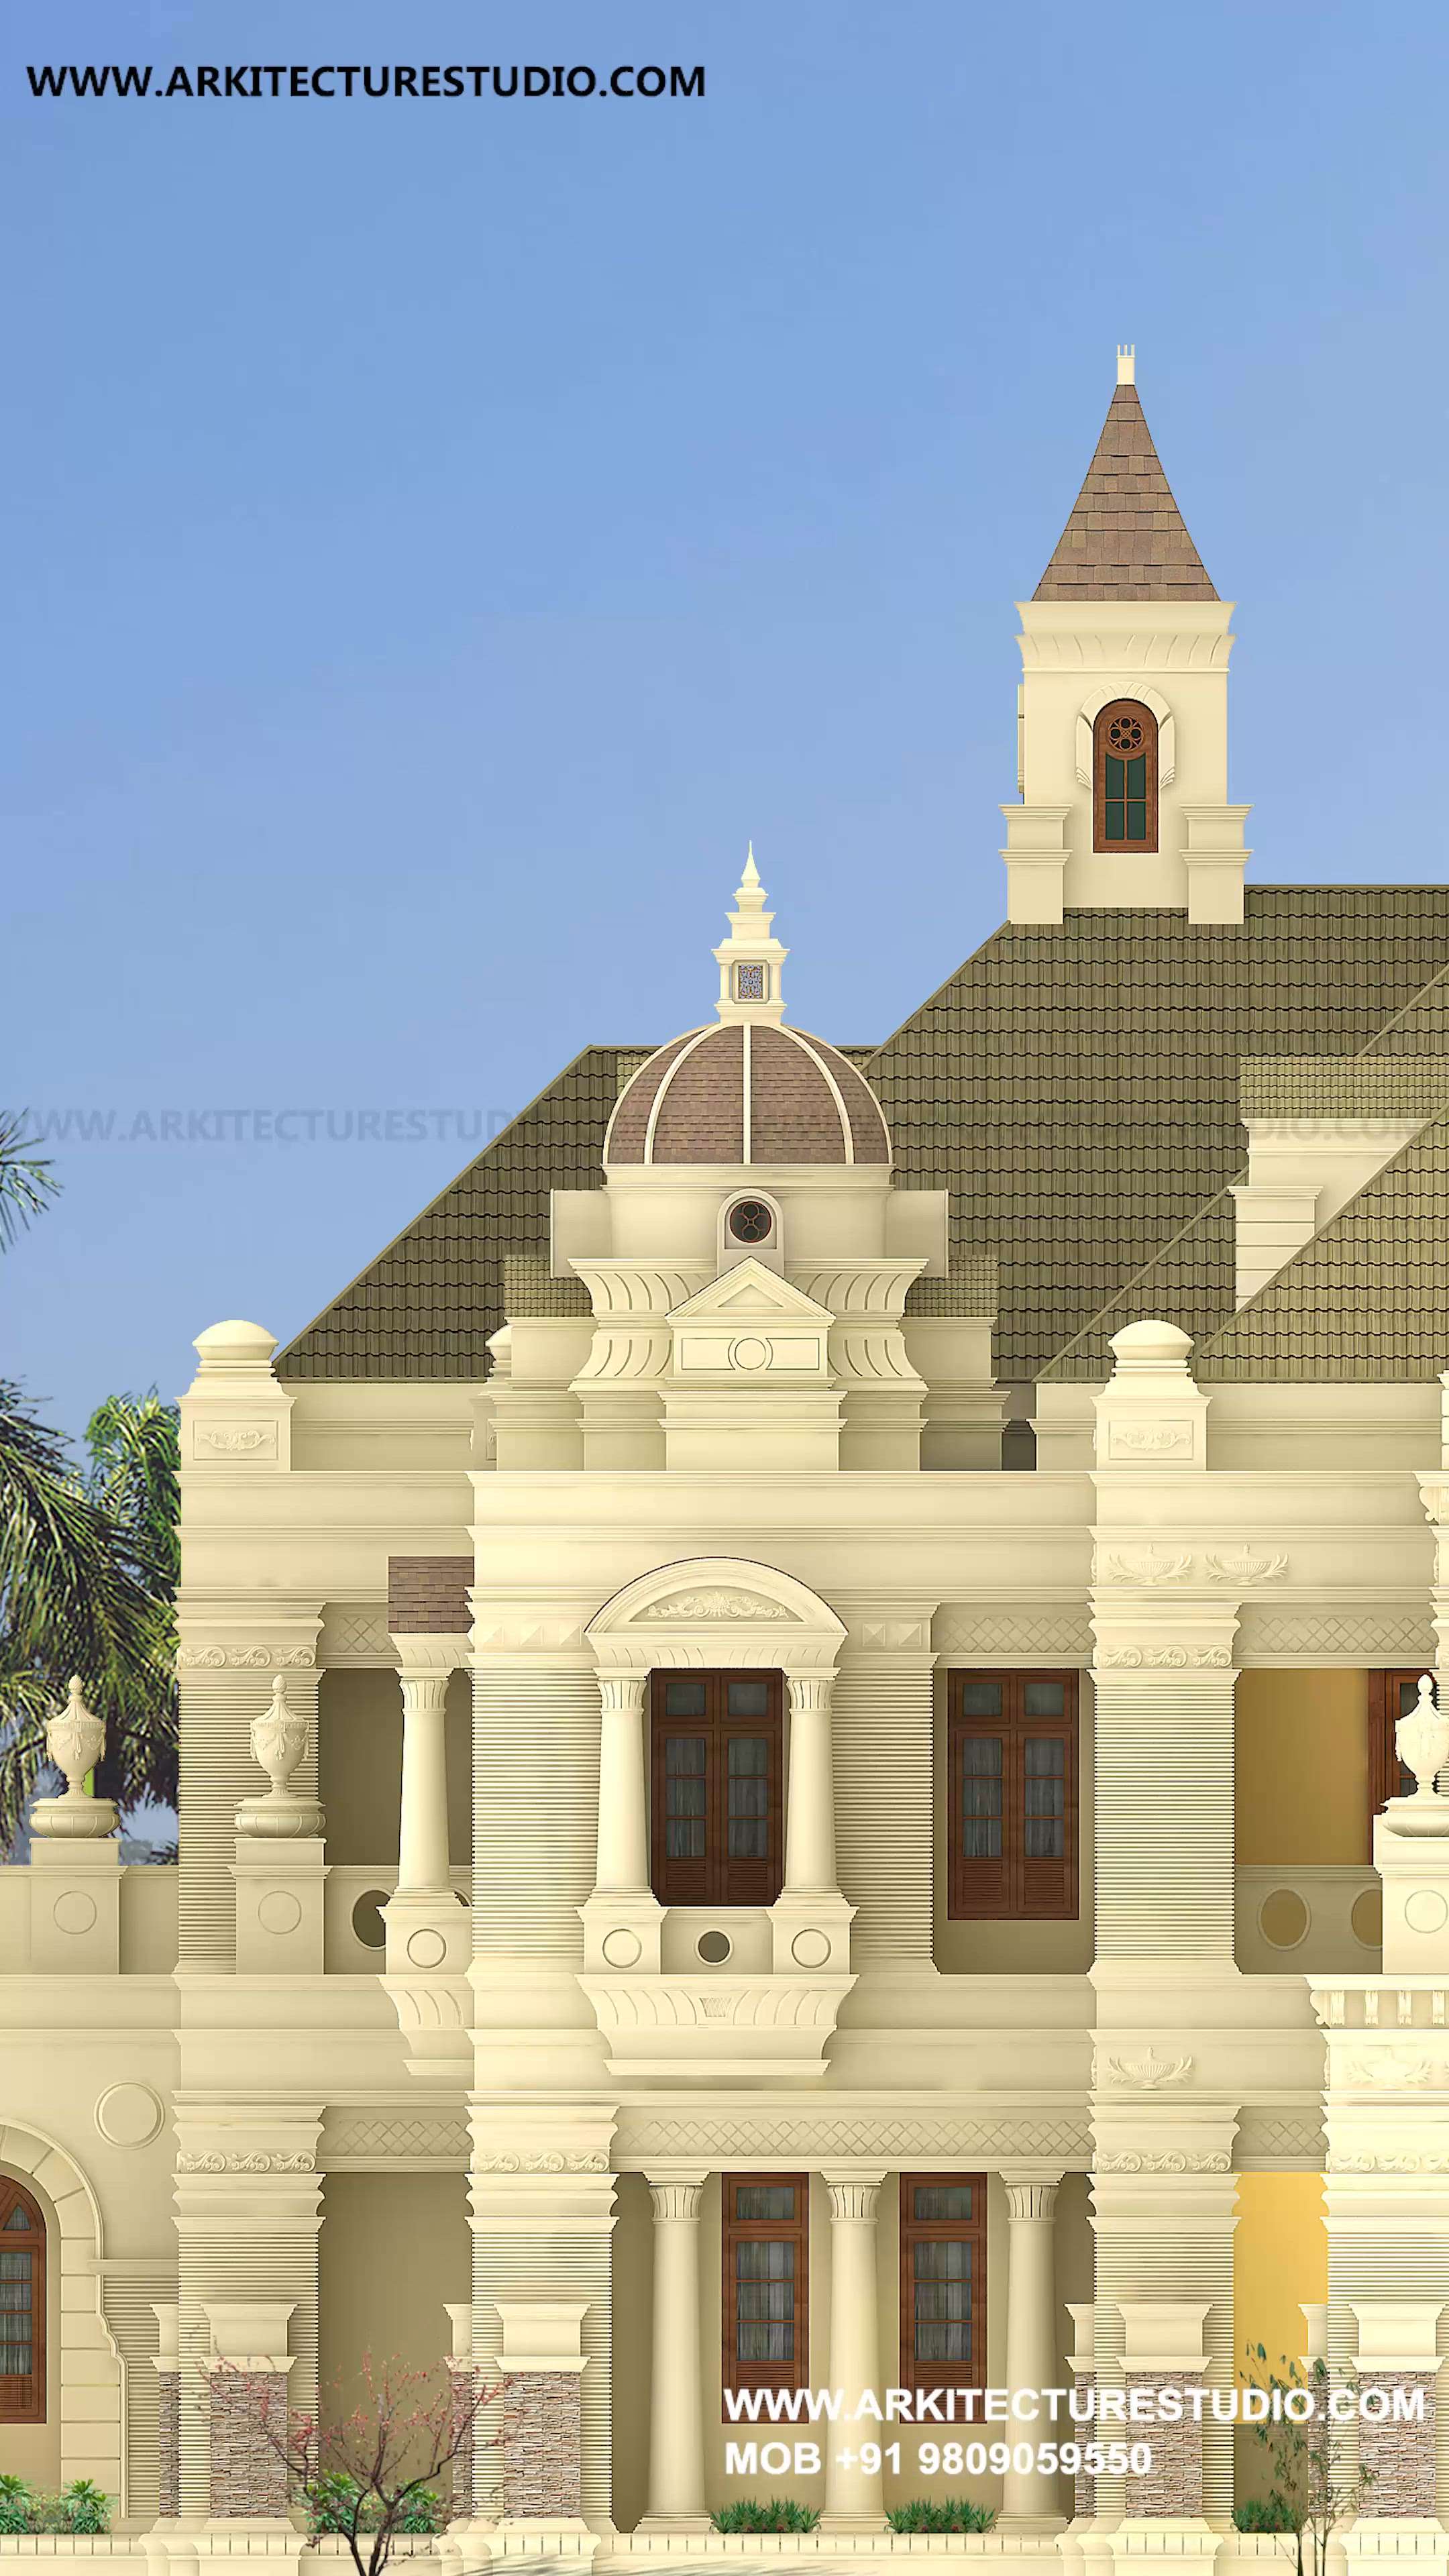 colonial luxury kerala house
www.arkitecturestudio.com
 #arkitecturestudio 
 #colonialvilladesign 
 #classichomes